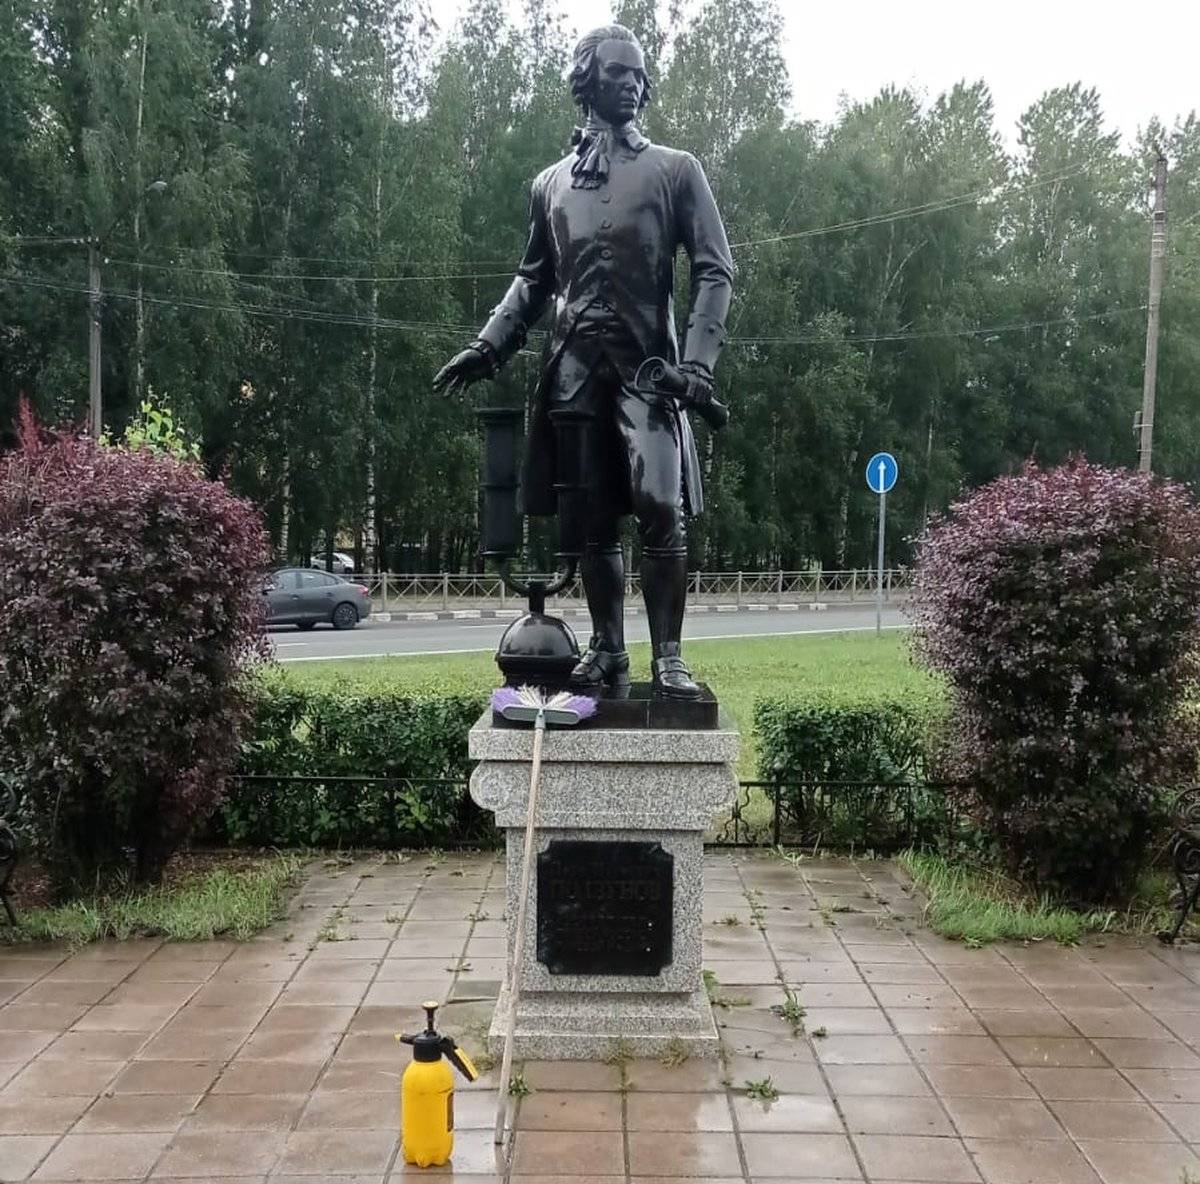 Памятник изобретателю Ивану Ползунову, жившему в XVIII веке, установили в Великом Новгороде в 2011 году.